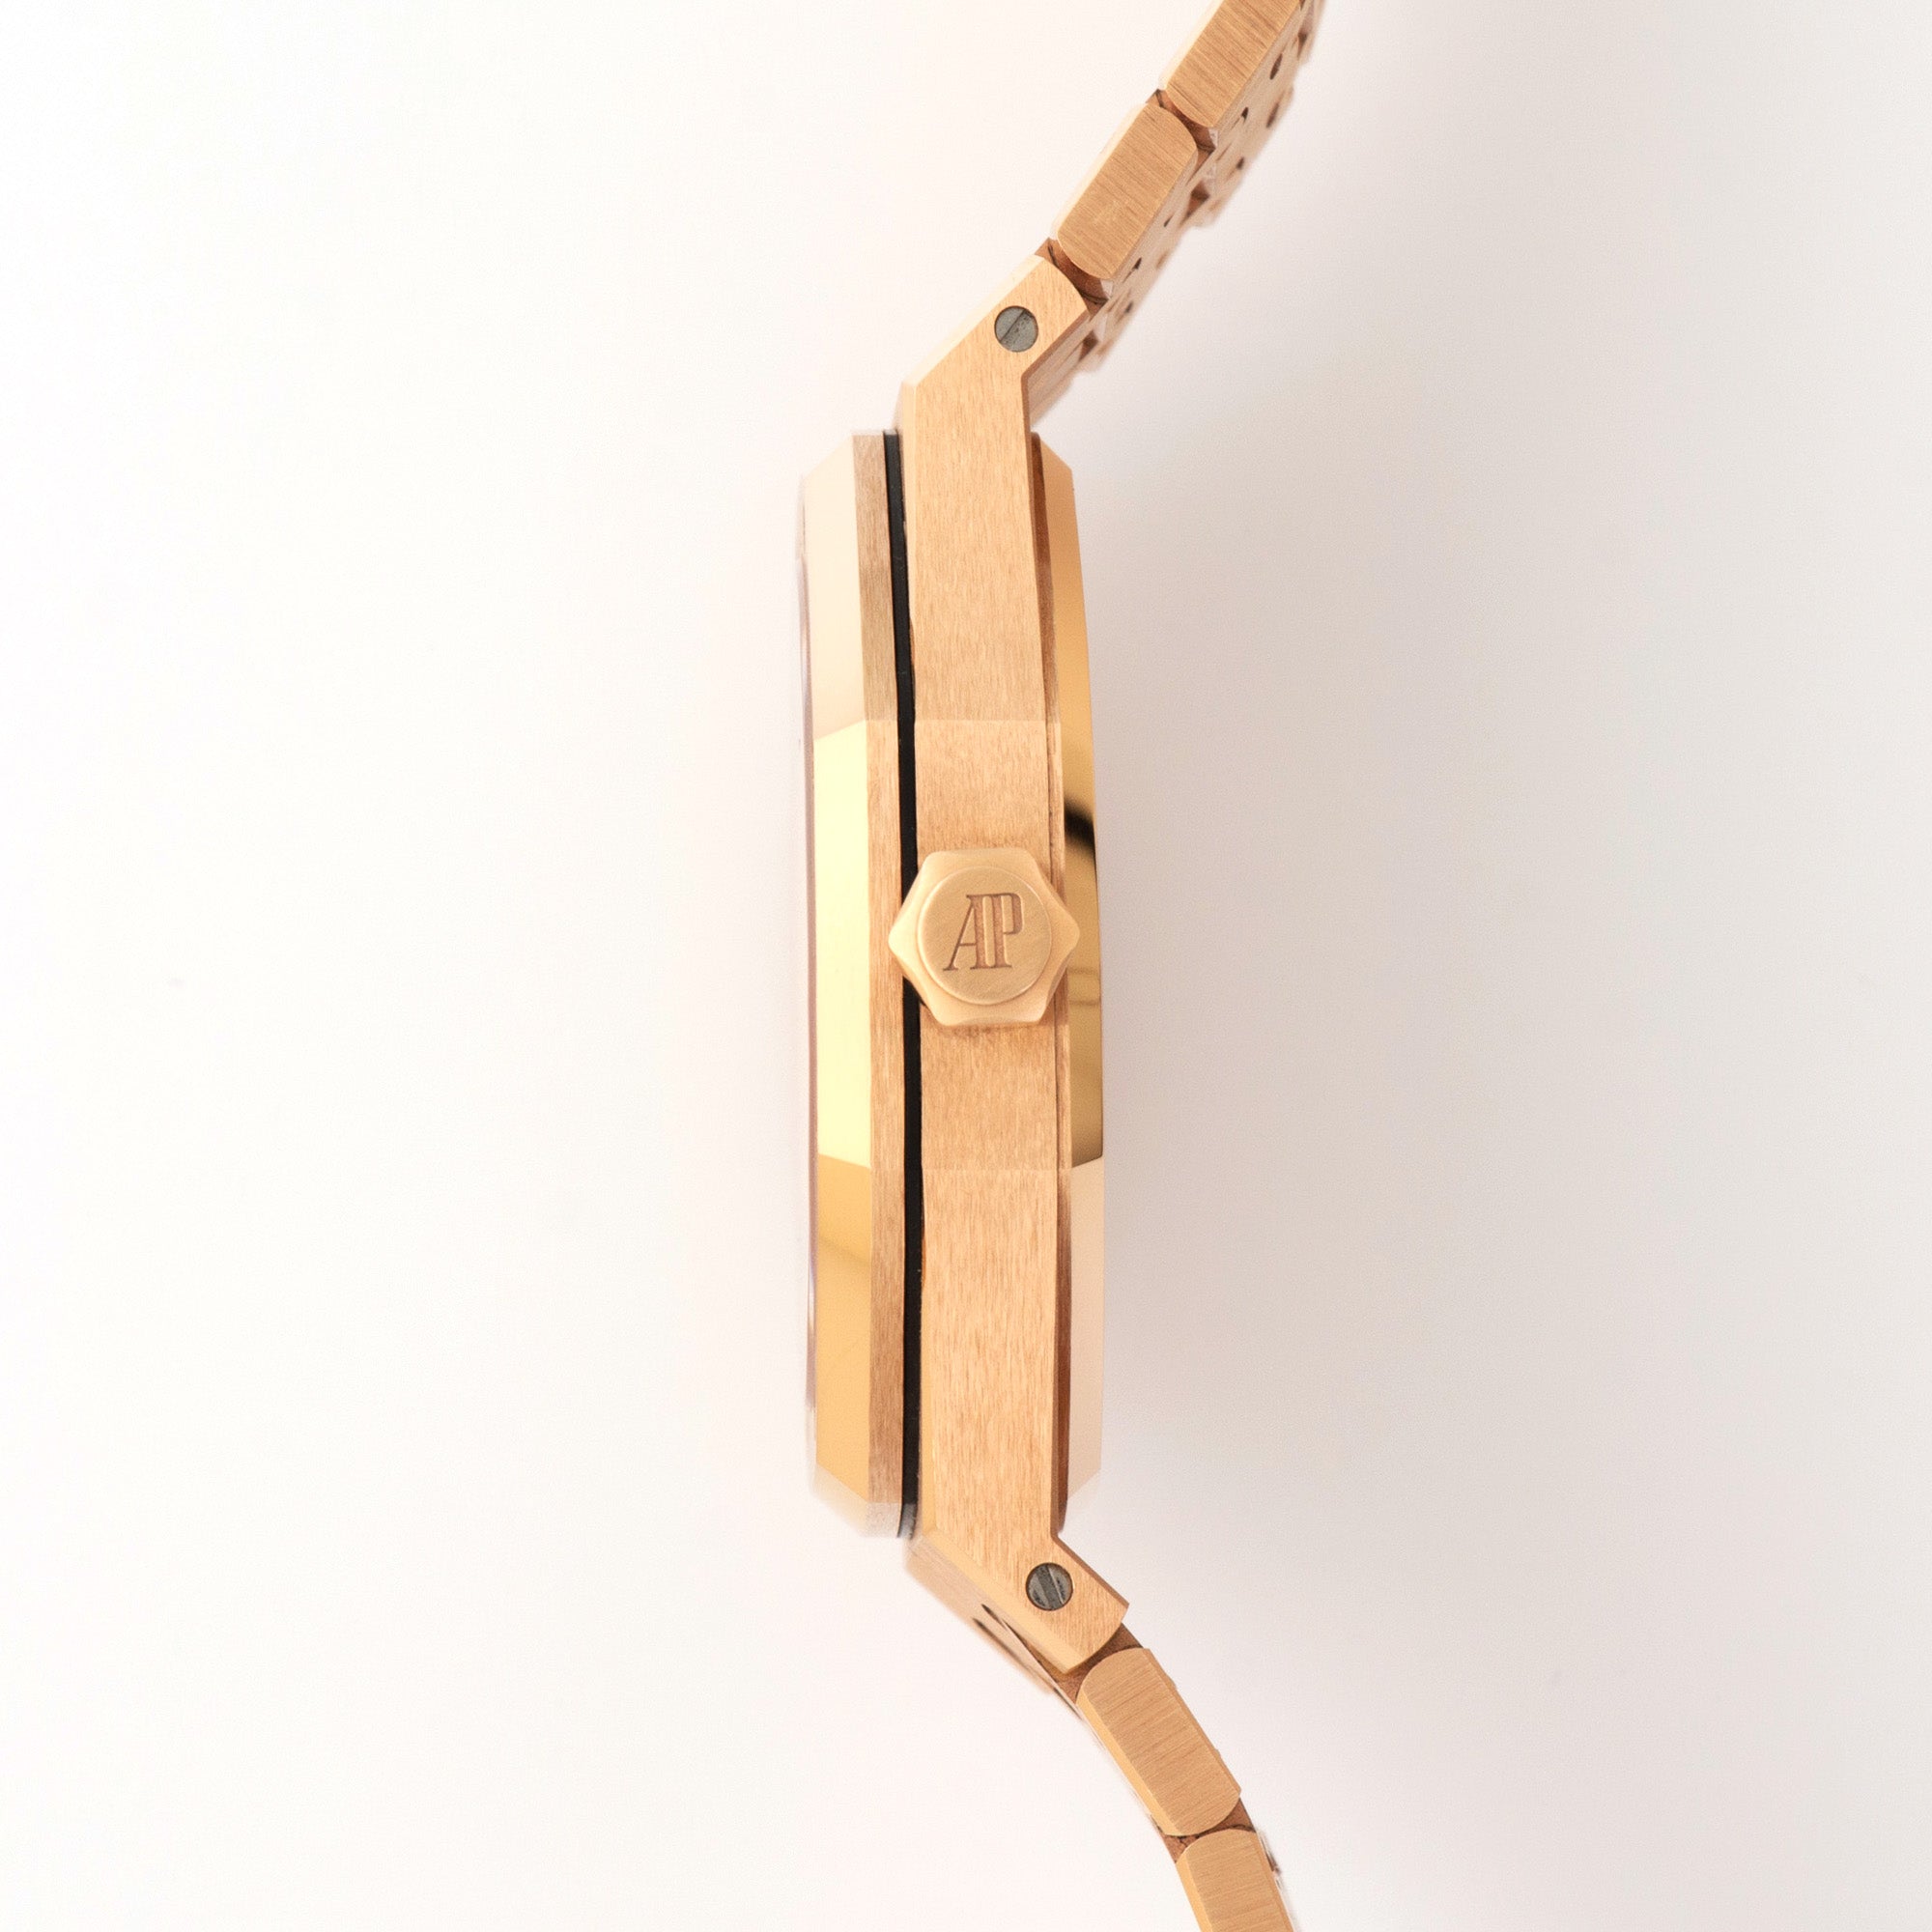 Audemars Piguet - Audemars Piguet Royal Oak Rose Gold Automatic Watch - The Keystone Watches